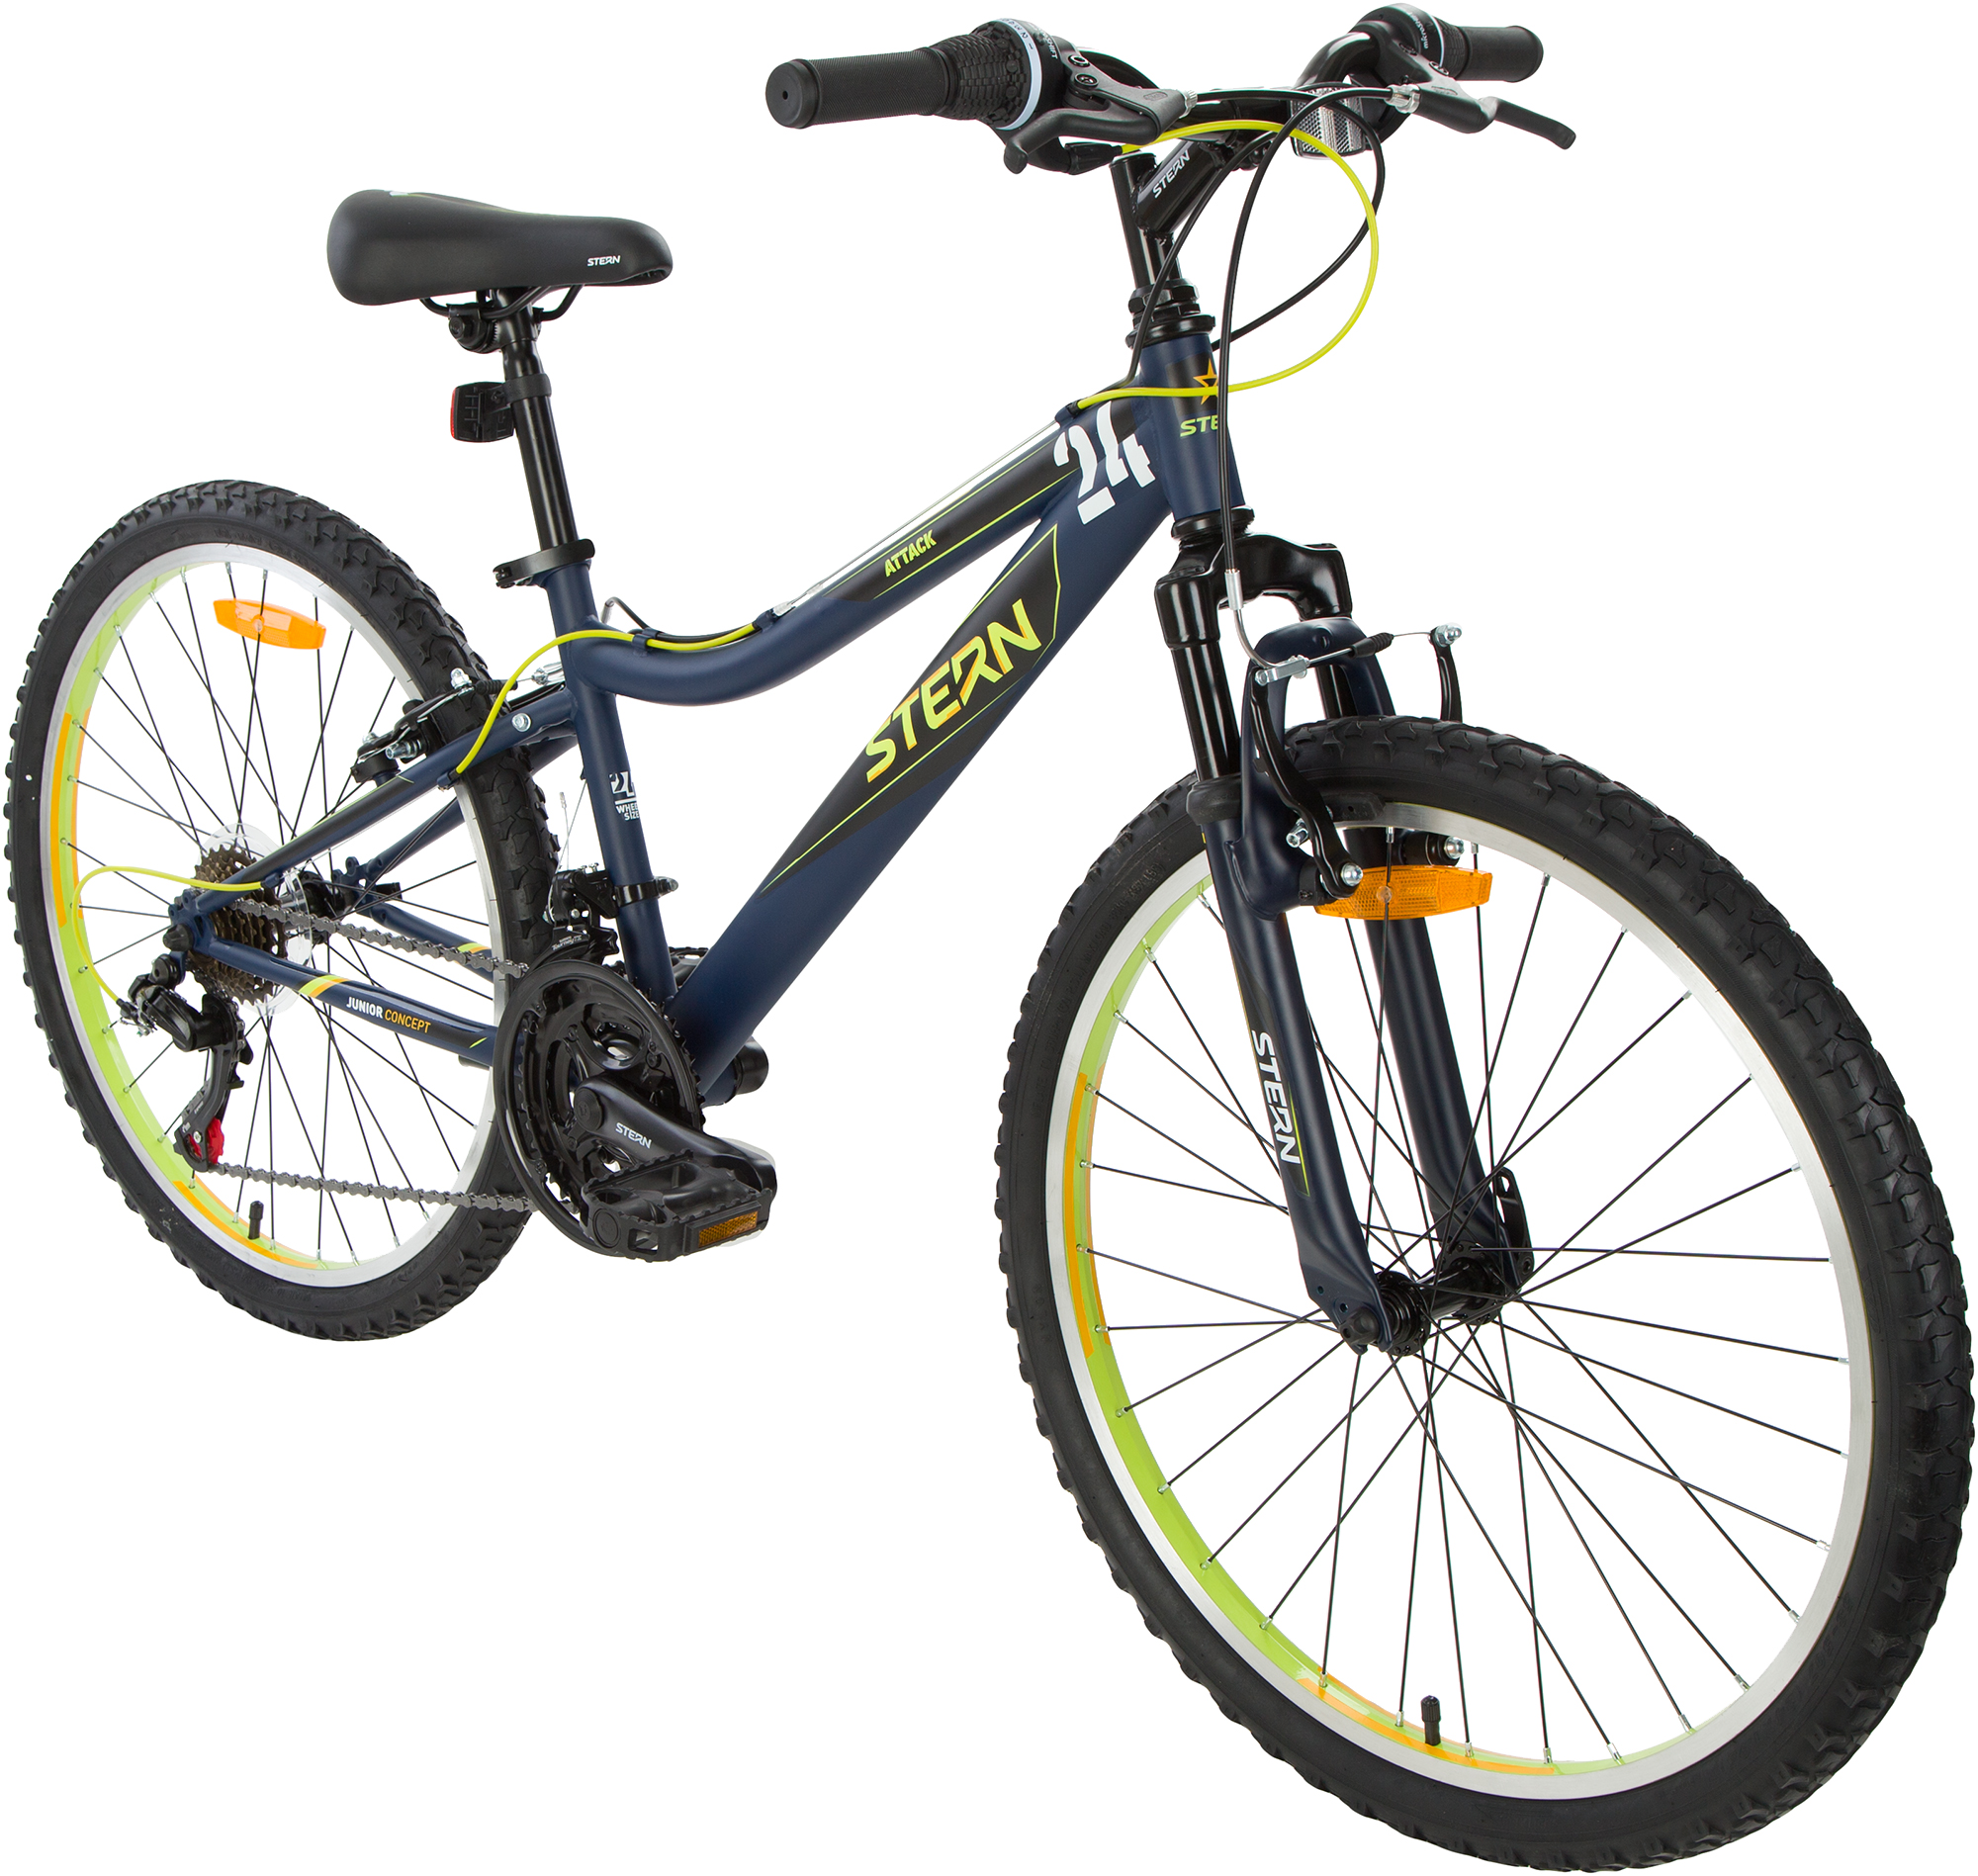 Купить подростковый велосипед для мальчика 10 лет. Велосипед Стерн 24 Аттак.